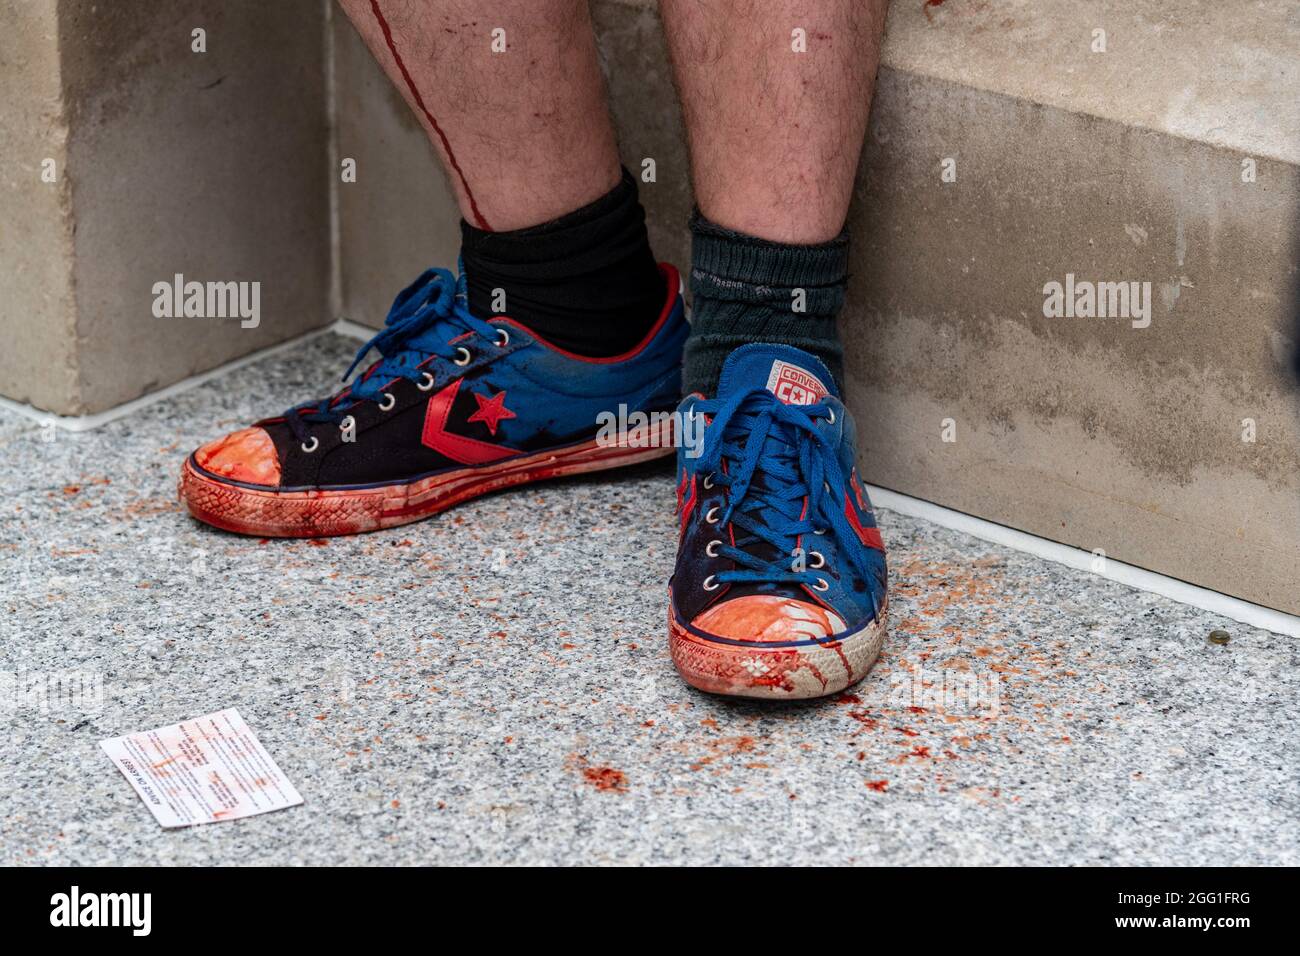 Londres, Royaume-Uni. 27 août 2021. Un manifestant est vu avec ses  chaussures envées dans le sang factice pendant la marche impossible de  l'argent du sang de rébellion de l'extinction en décoloniser l'économie